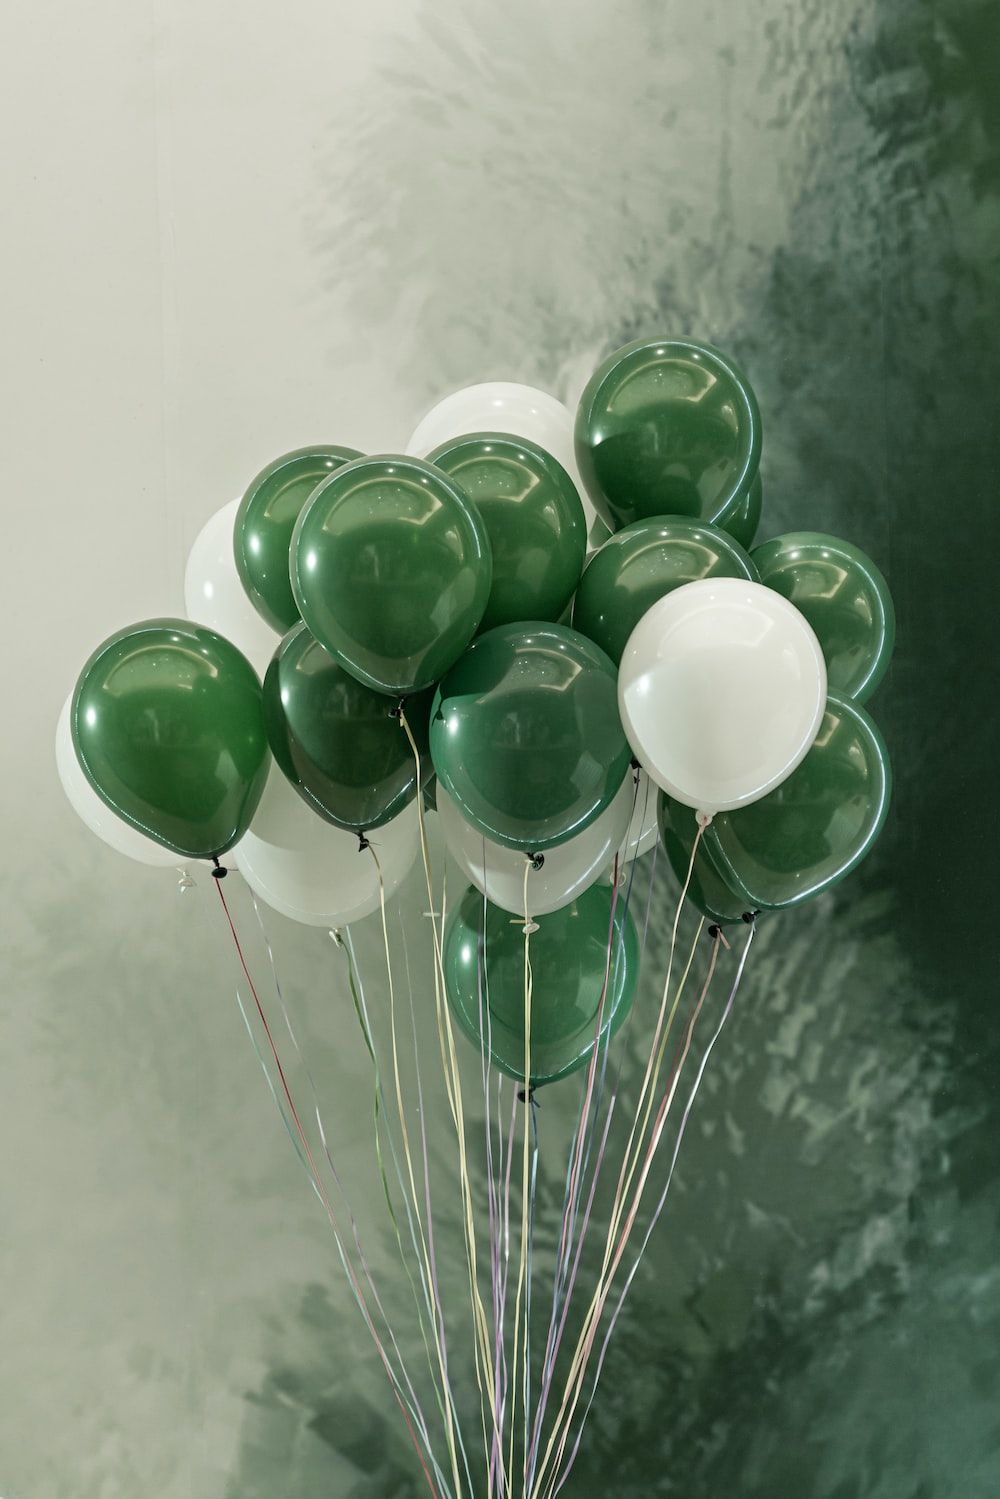  Luftballons Hintergrundbild 1000x1499. Beste Ballonbilder. Download Kostenlose Bilder auf